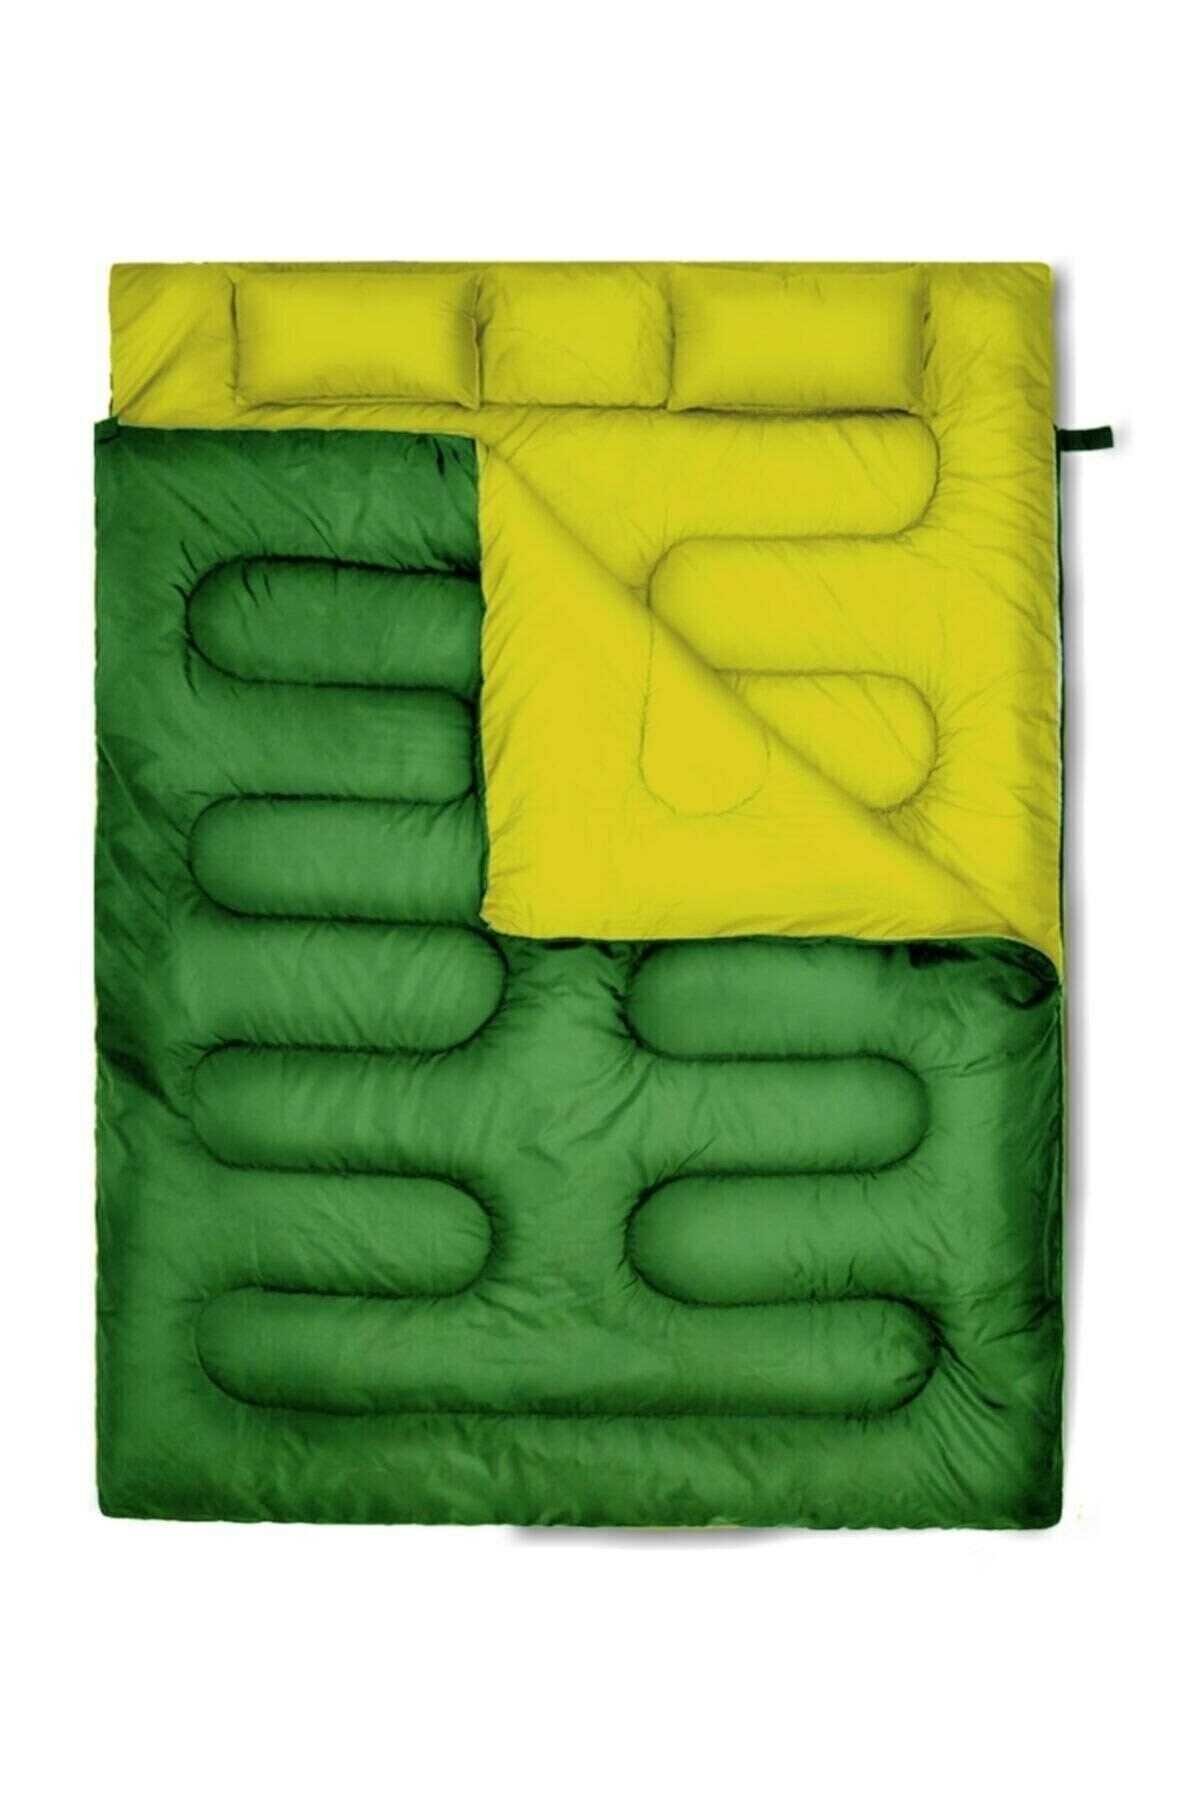 Solano Çift Kişilik (190+30)x140cm Yeşil -10° Uyku Tulumu